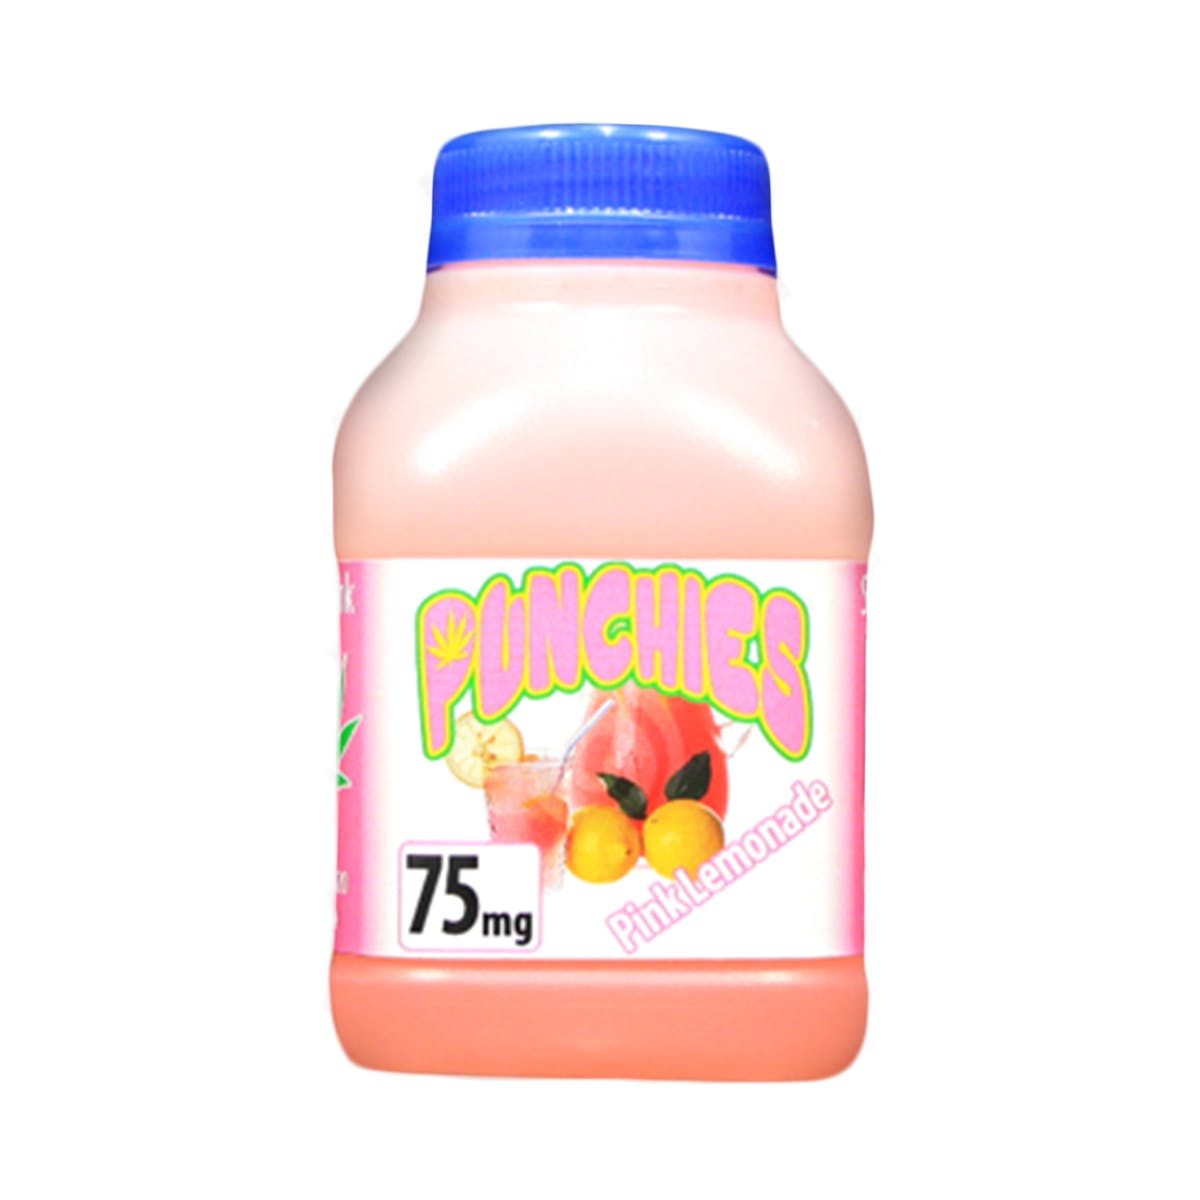 Punchie Pink Lemonade Juice 75mg